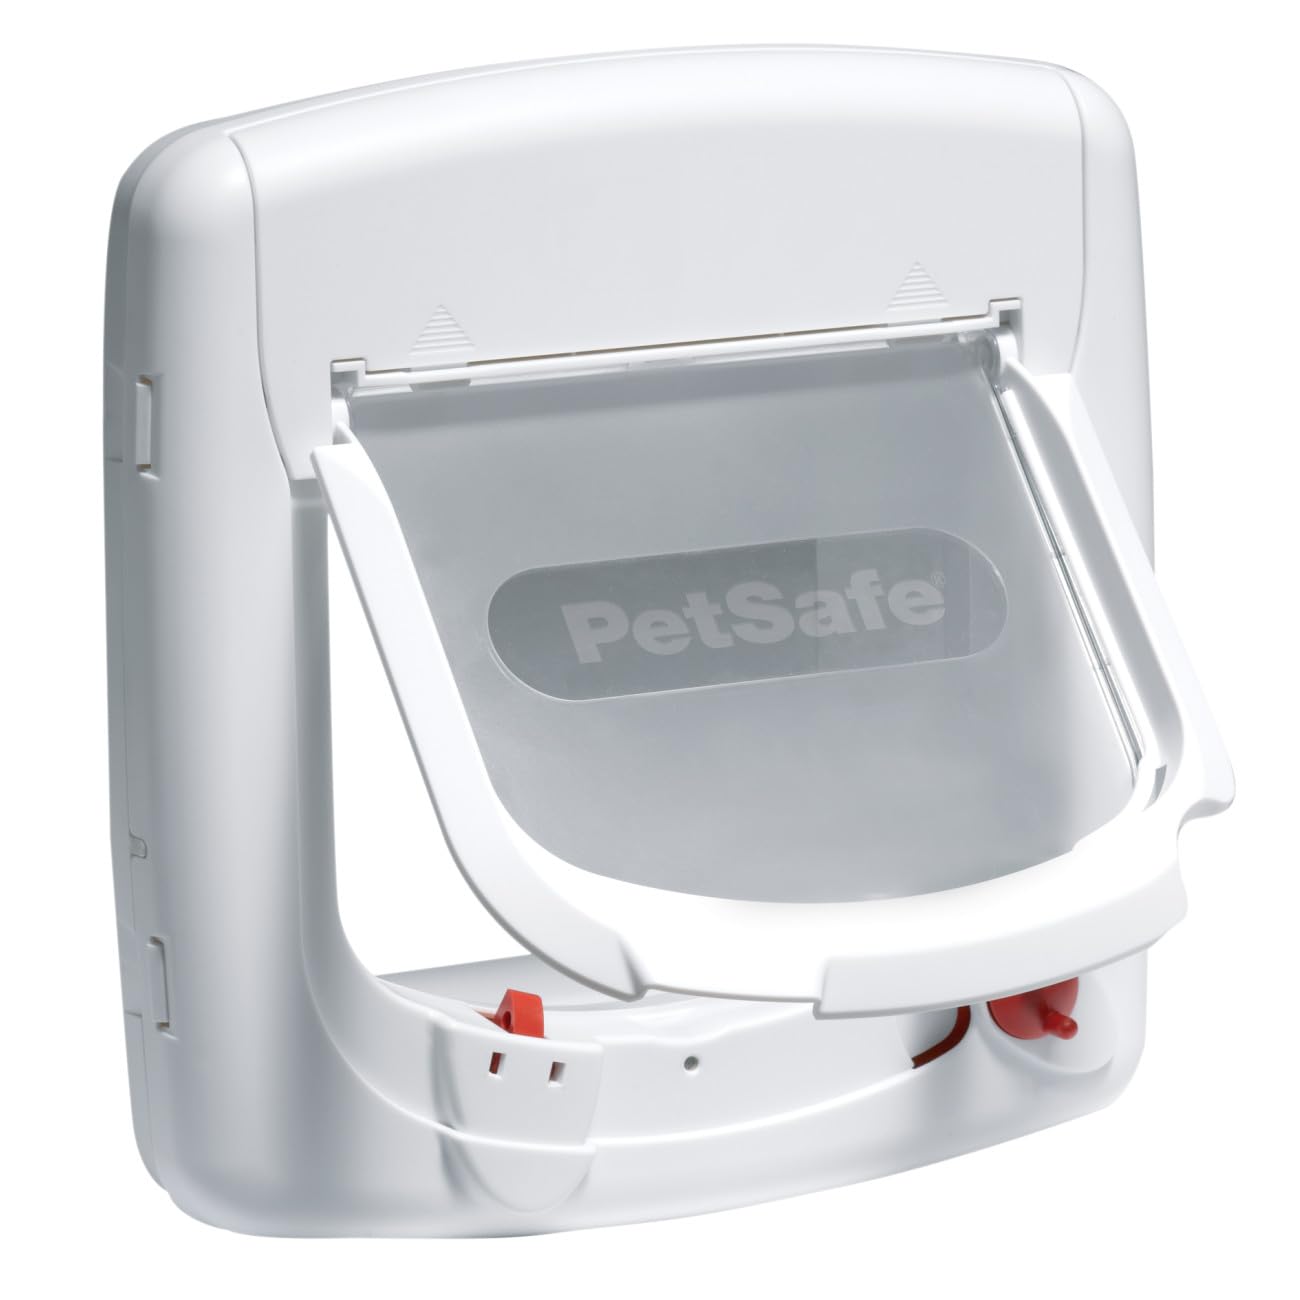 PetSafe Staywell Magnetische Katzenklappe Deluxe, Magnet-Schlüssel gibt nur Ihrer Katze Zugang - hält fremde Tiere draußen, mit 4 Verschlussoptionen, für Katzen bis zu 7 kg, Weiß